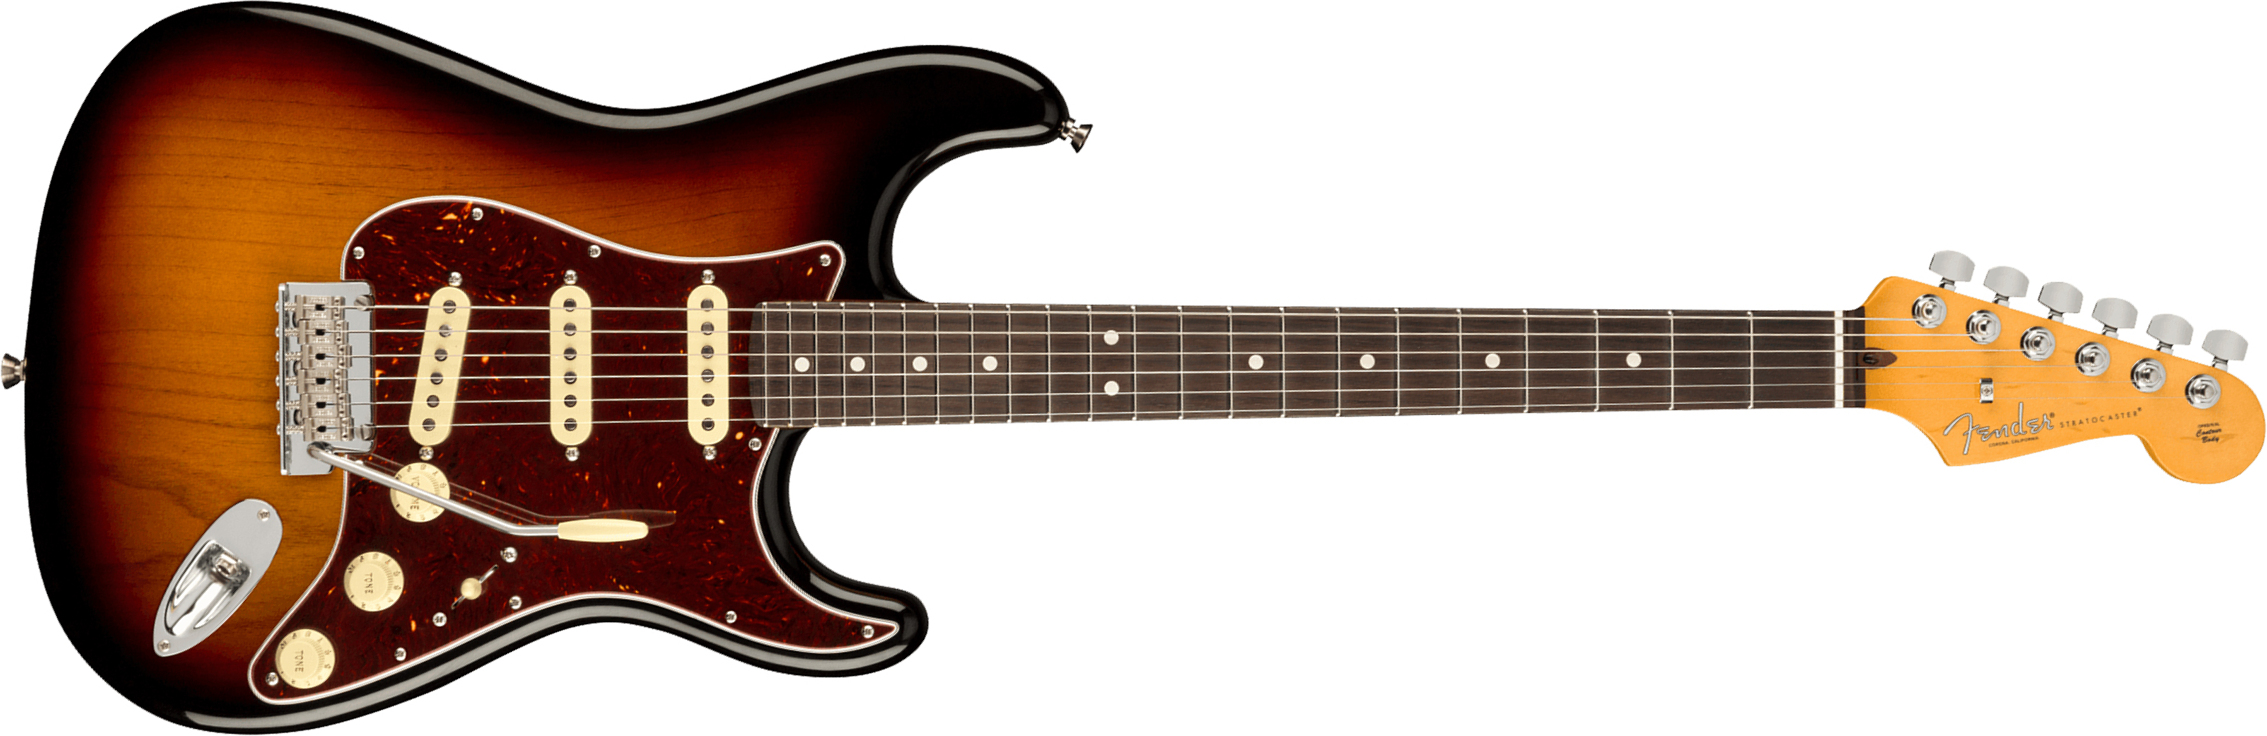 Fender Strat American Professional Ii Usa Rw - 3-color Sunburst - Guitare Électrique Forme Str - Main picture